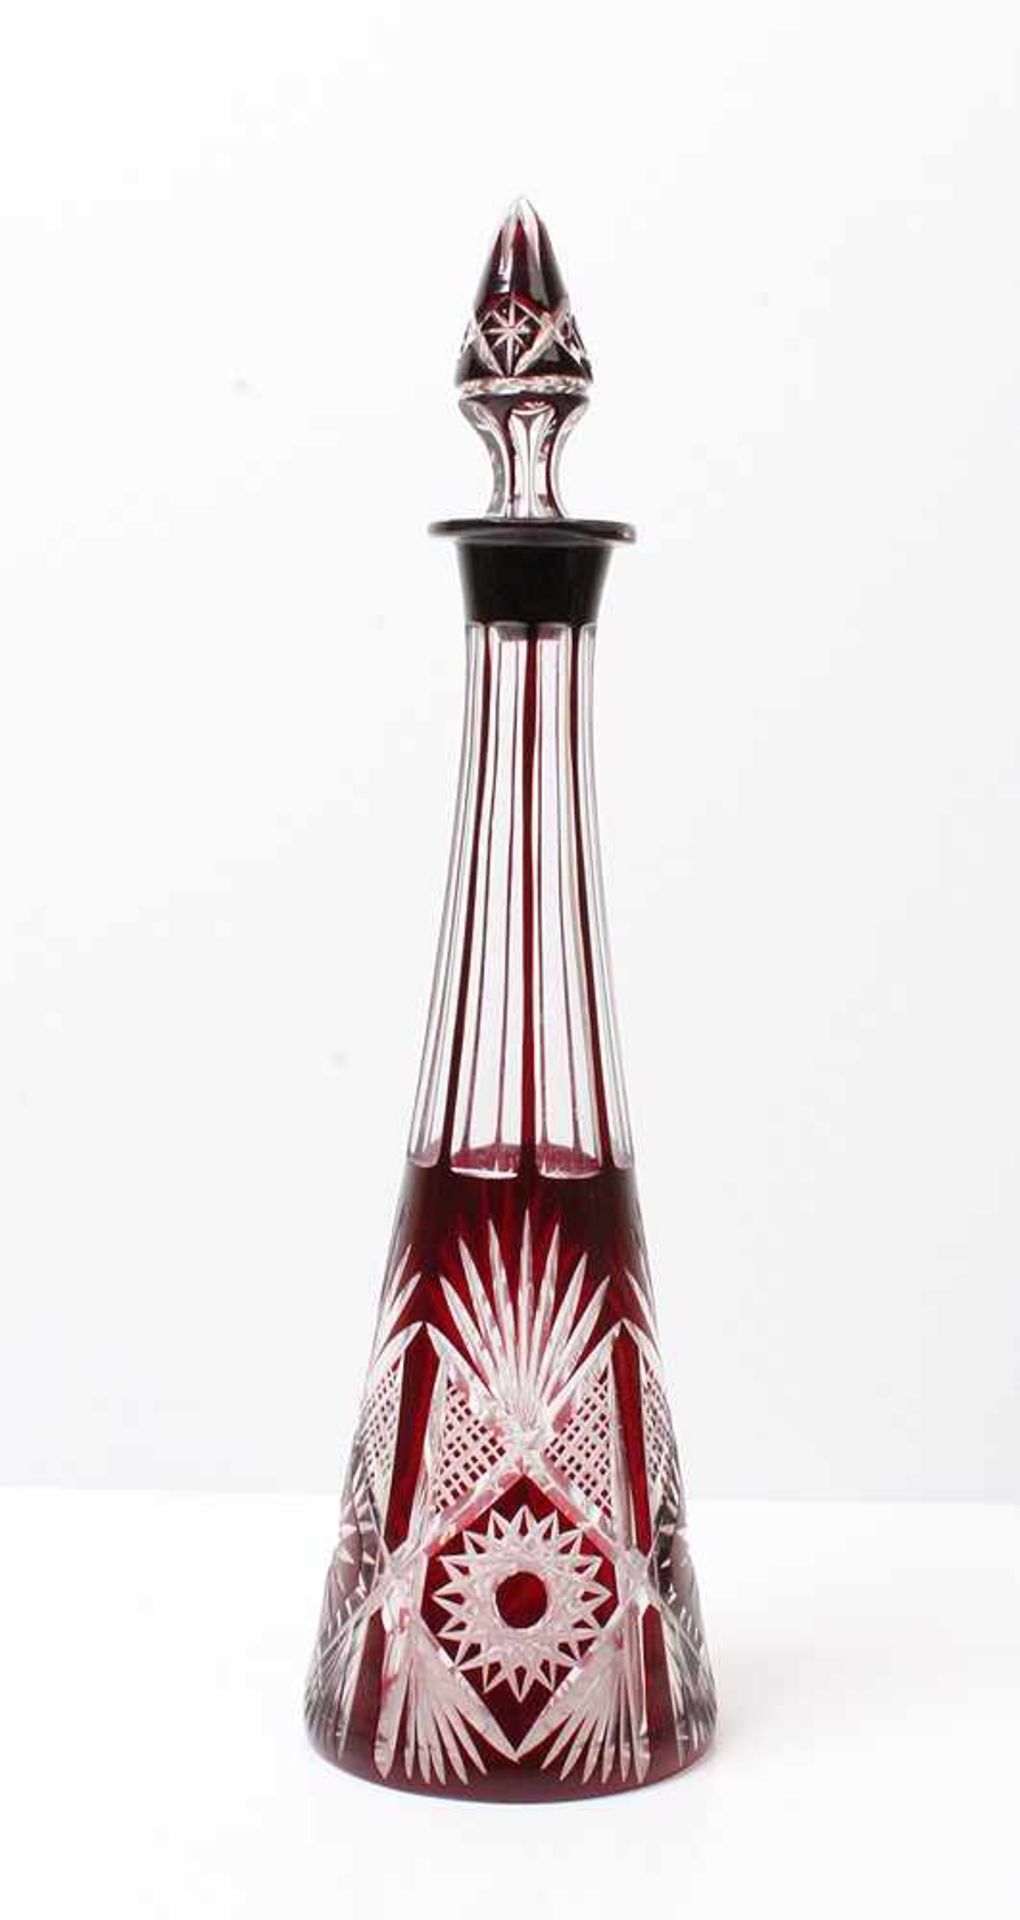 Karaffe.Böhmen, um 1900. Farbloses Glas mit rotem Überfang. Stöpsel innen best. H: 35 cm.- - -20.